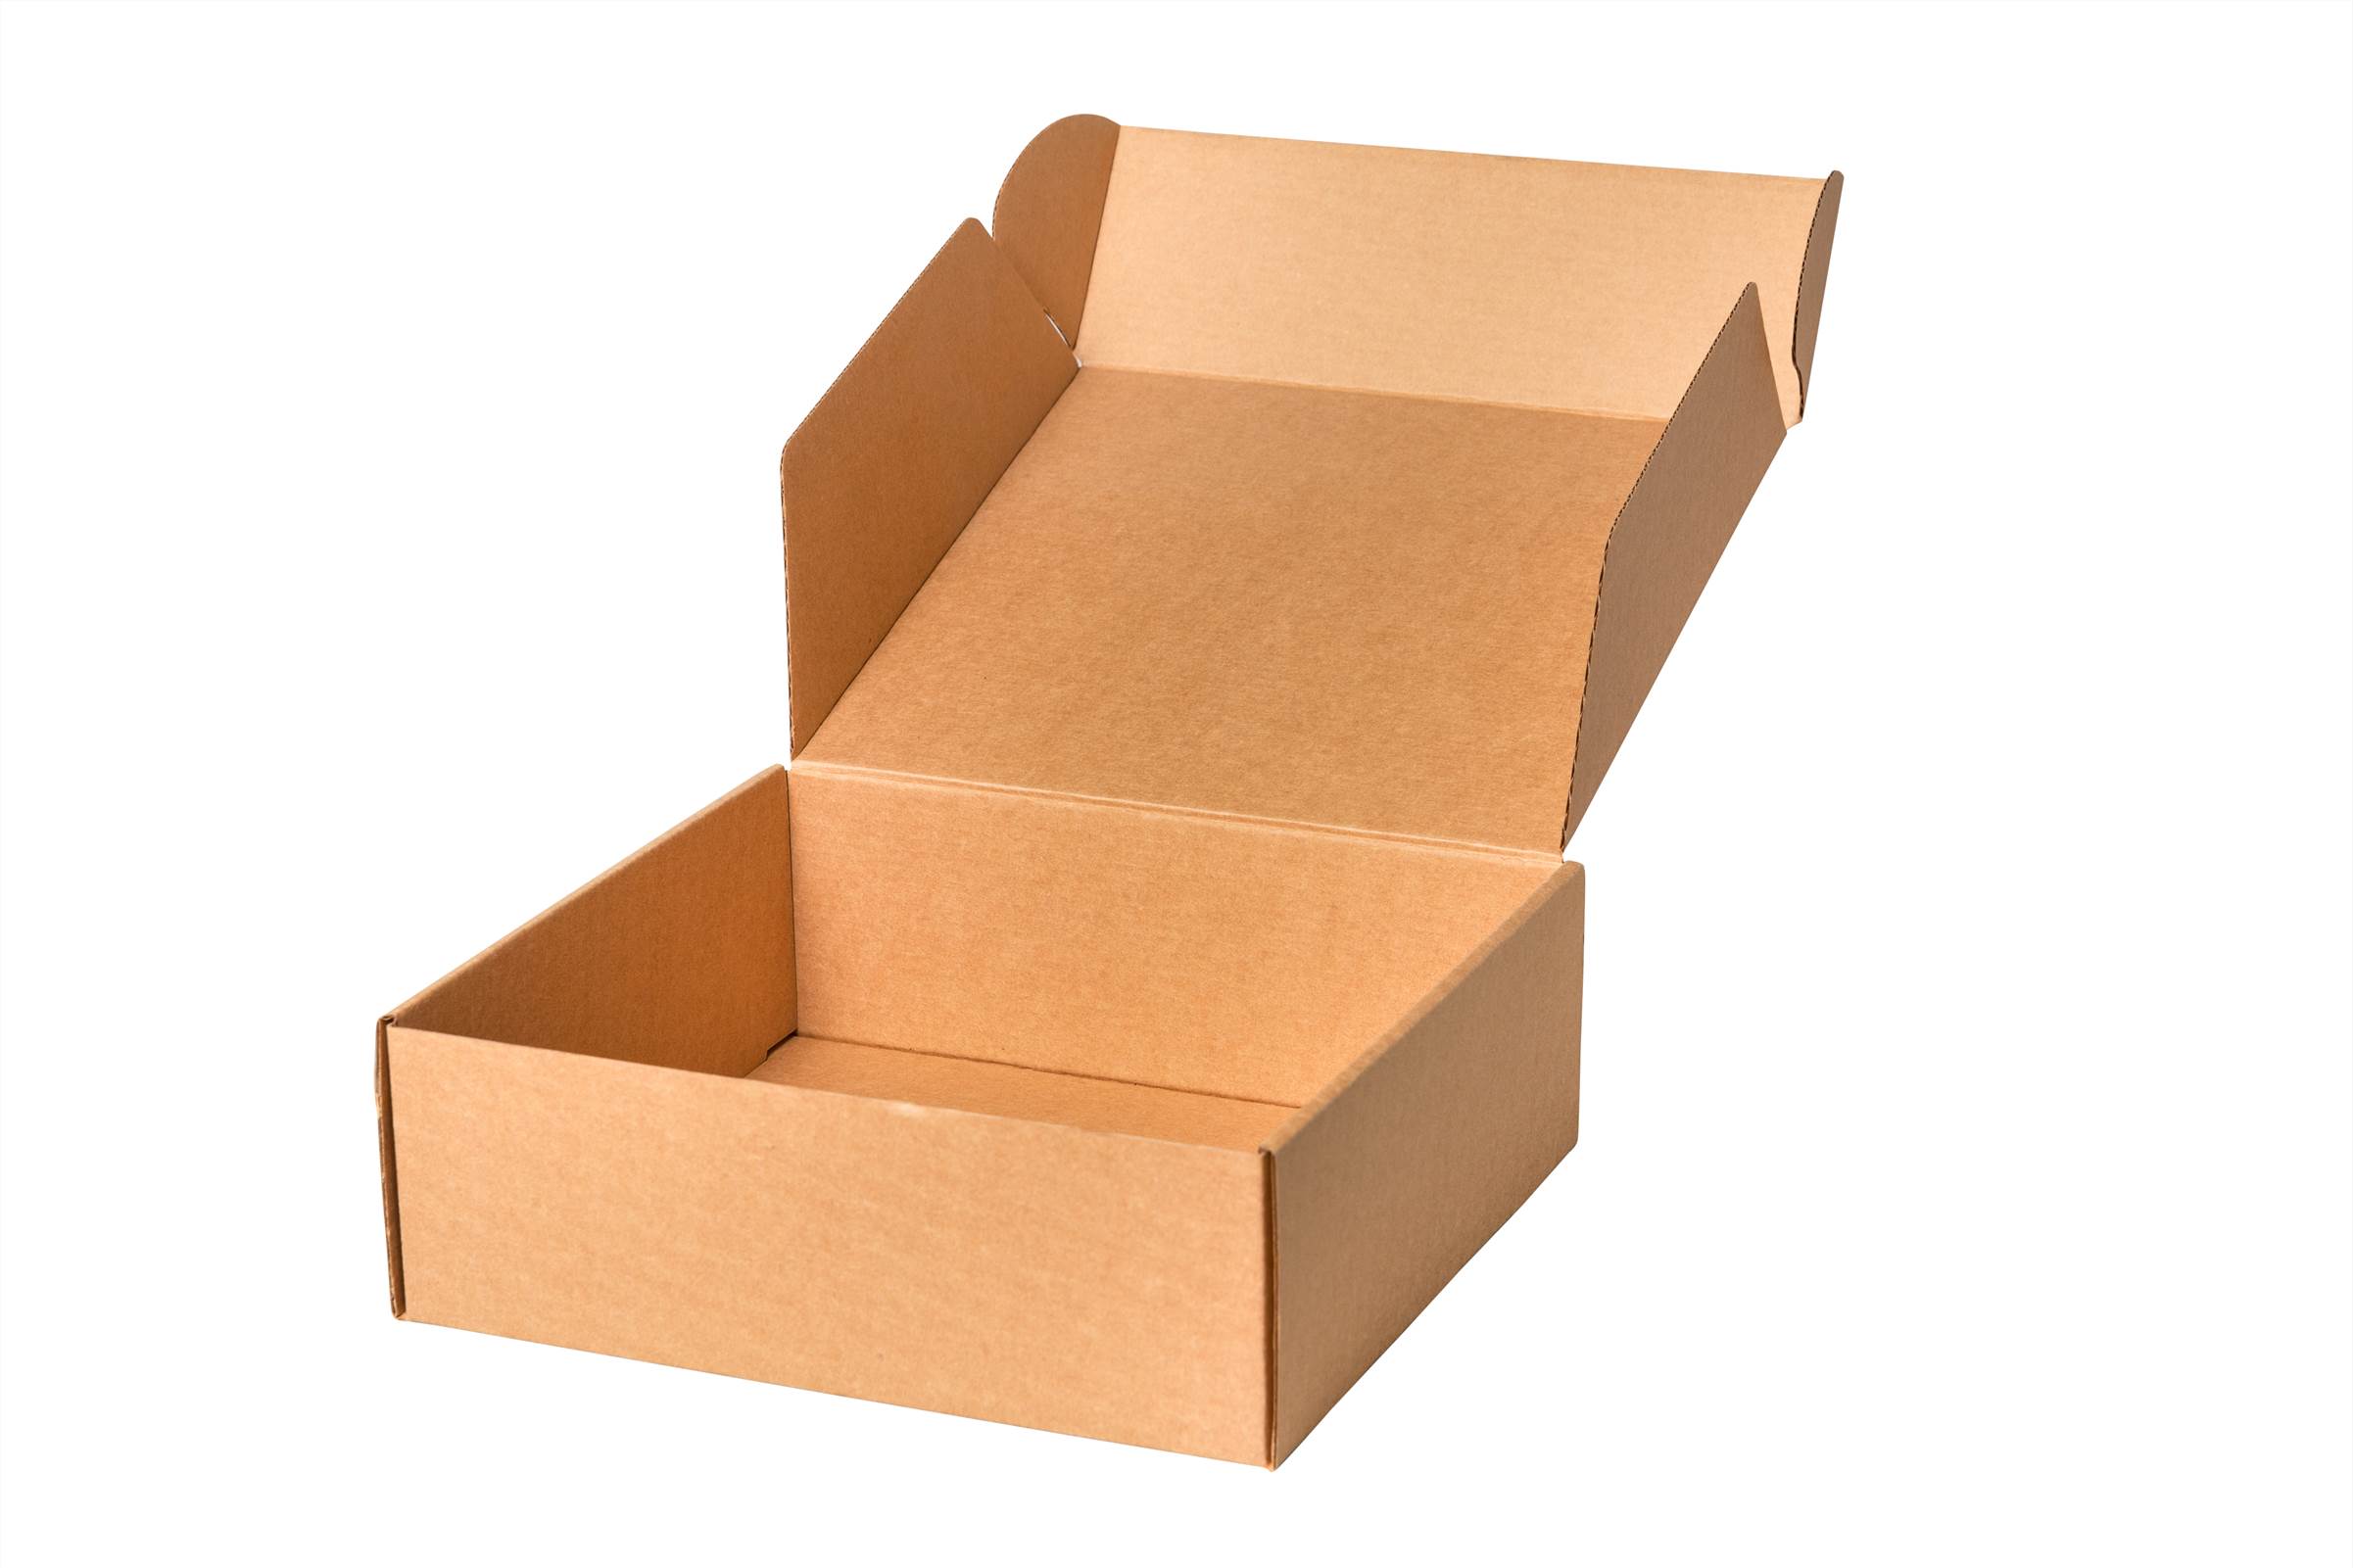 Tab Lock Shipping Box - Kraft Cardboard